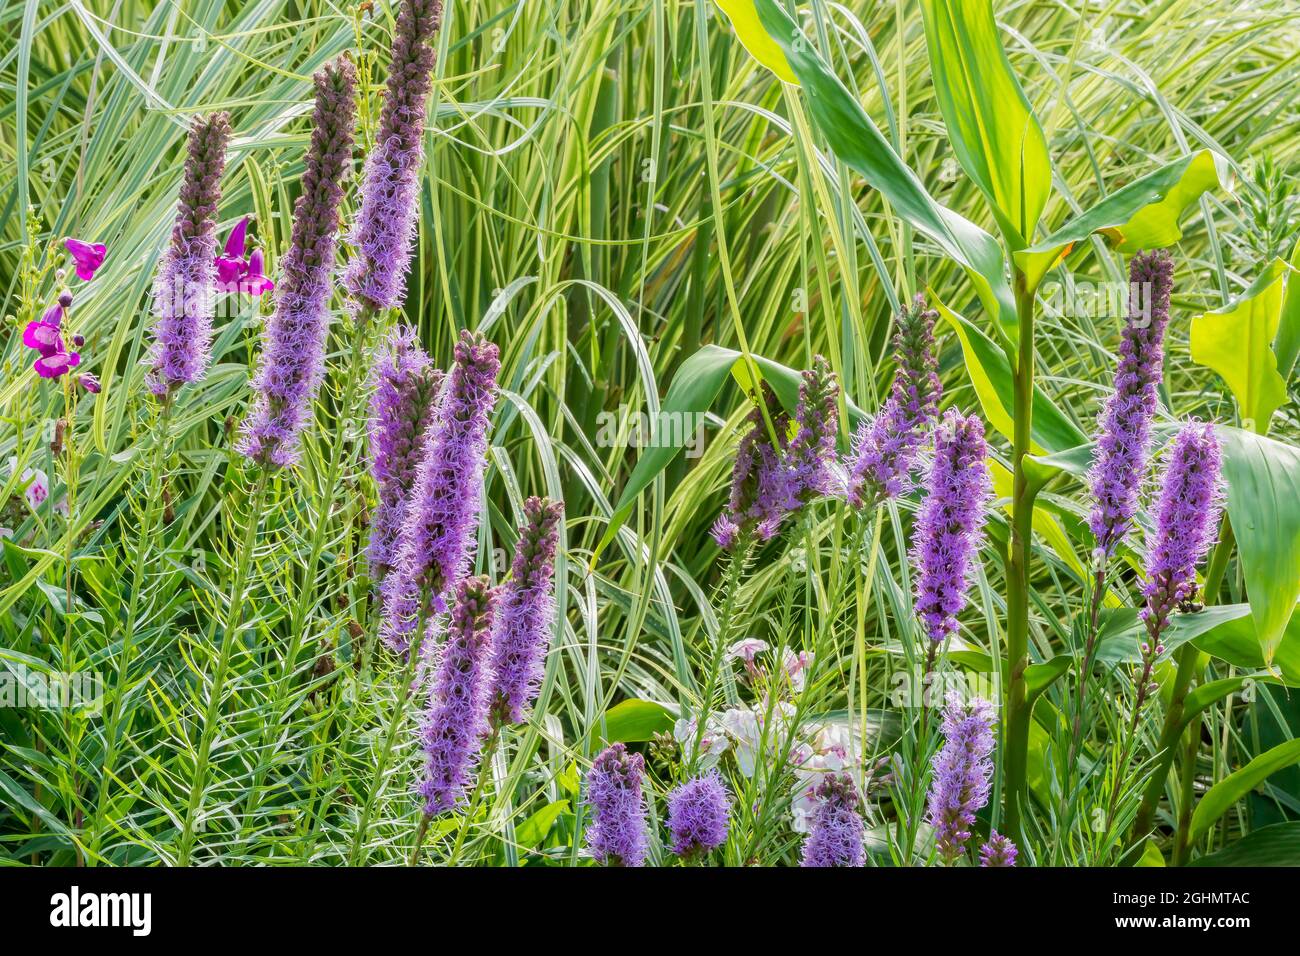 Liatris Spicata "Floristan Violett" Stockfoto